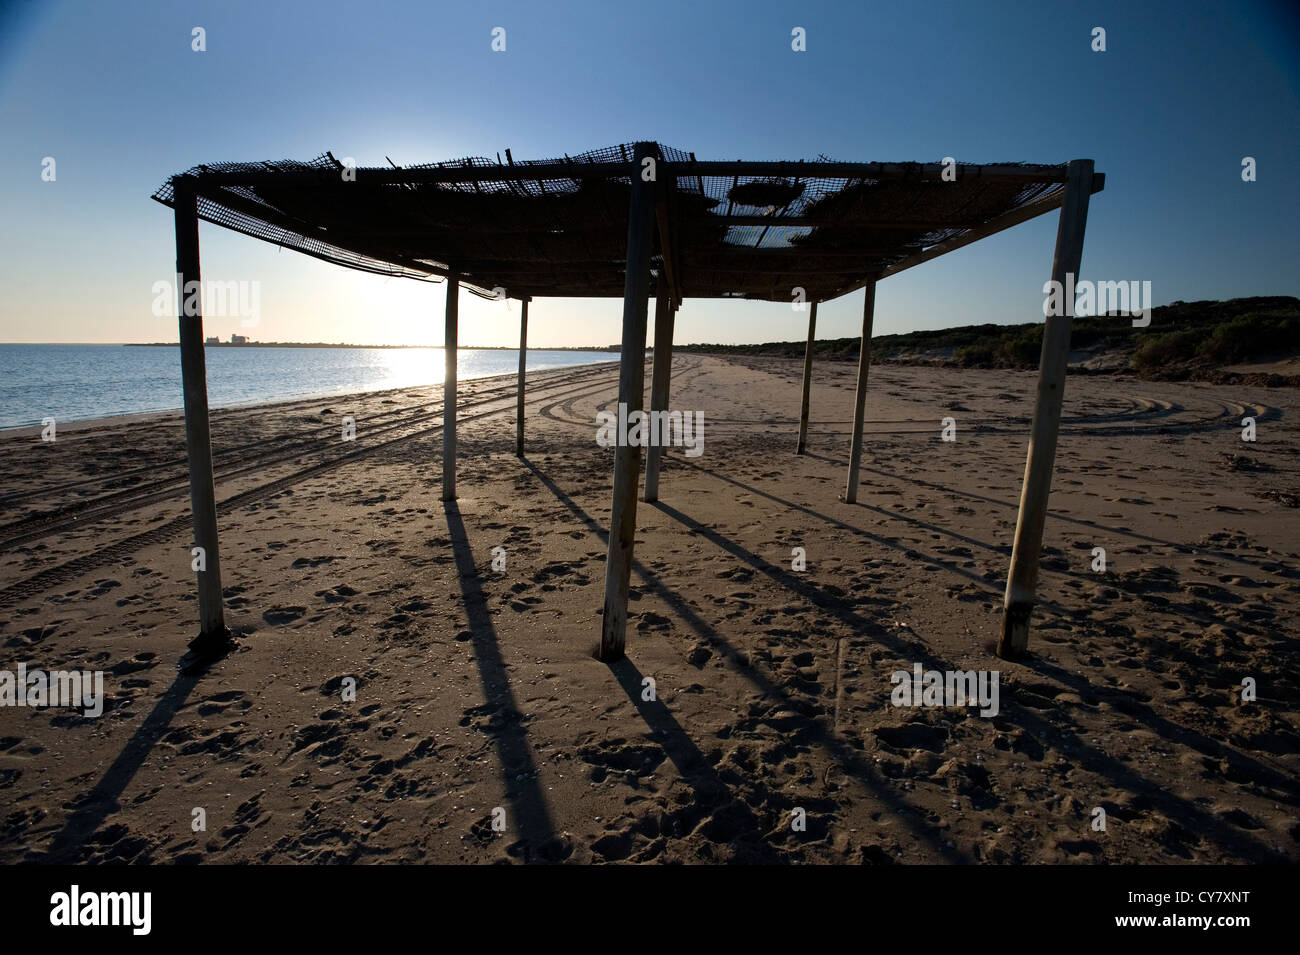 beach shade shelter Stock Photo